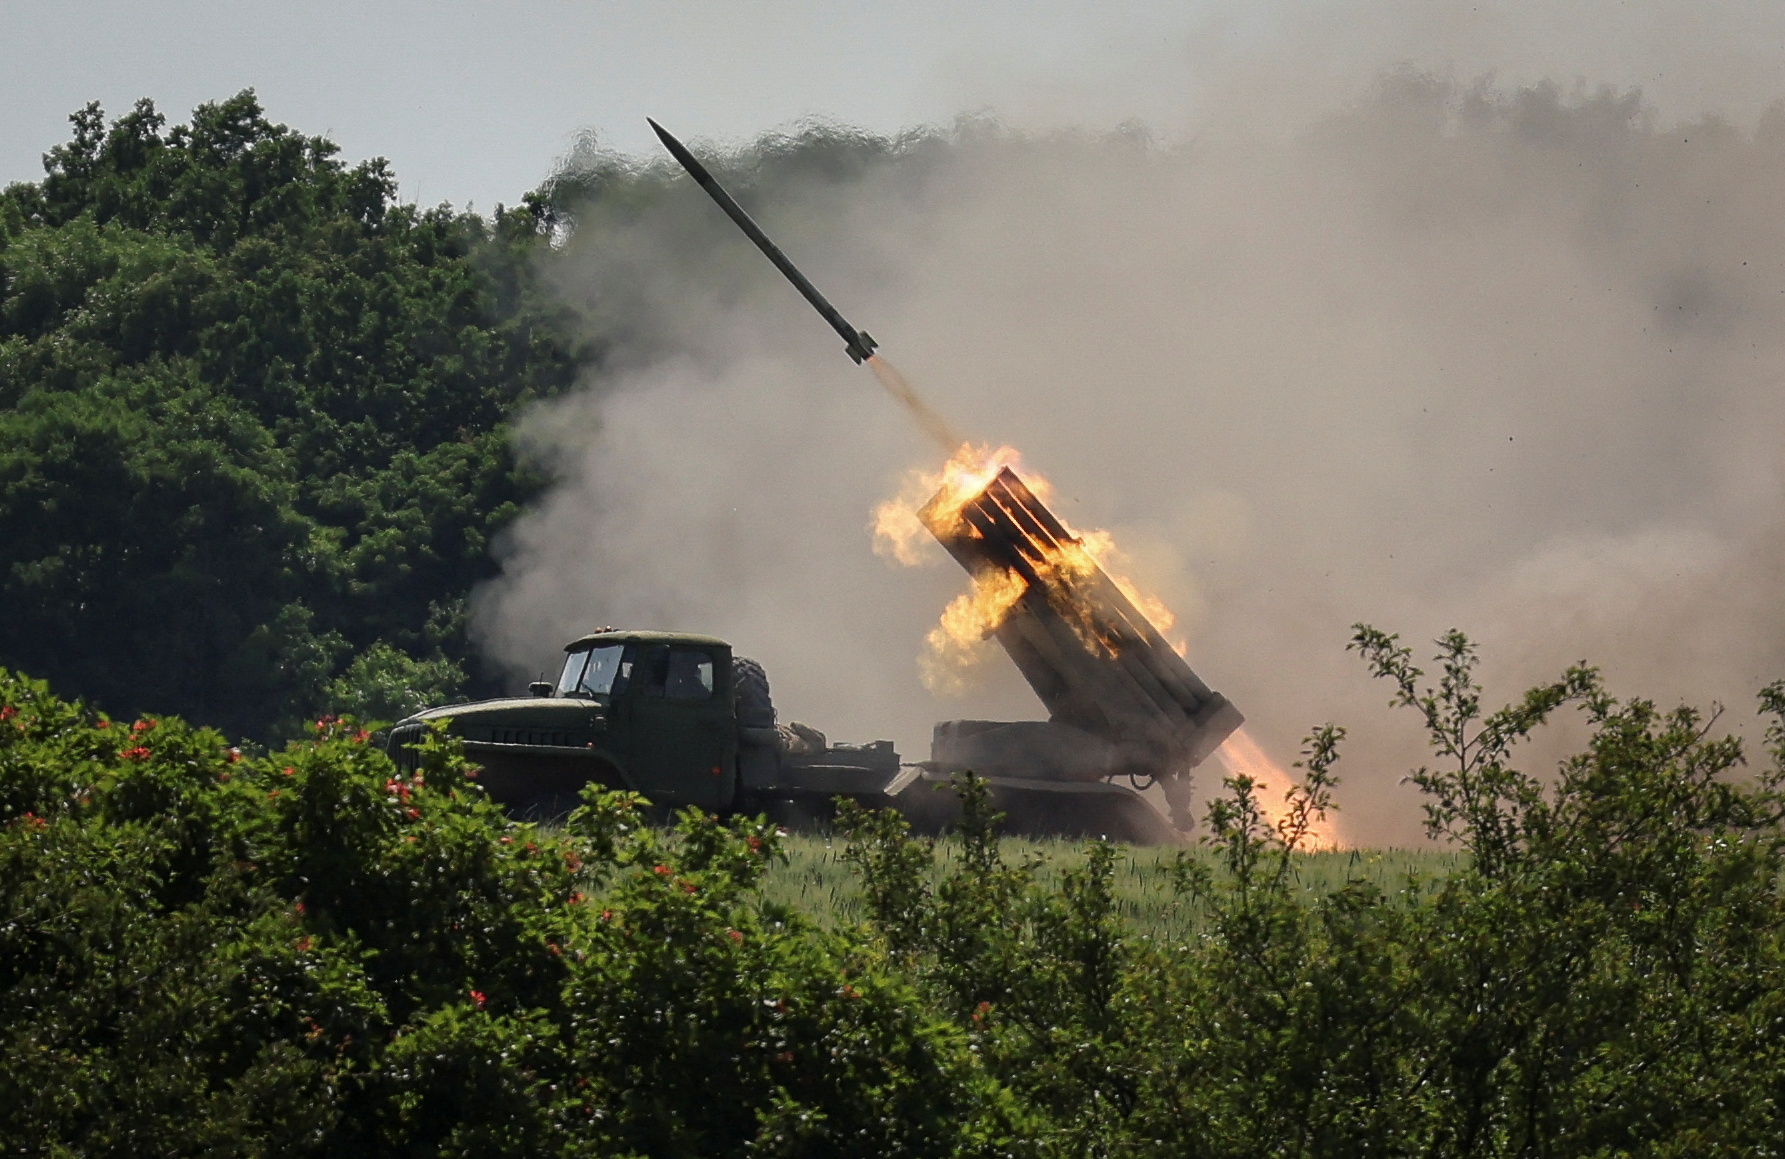 Ukrainian service members fire a BM-21 Grad multiple rocket launch system, near the town of Lysychansk, Luhansk region, Ukraine, on June 12.